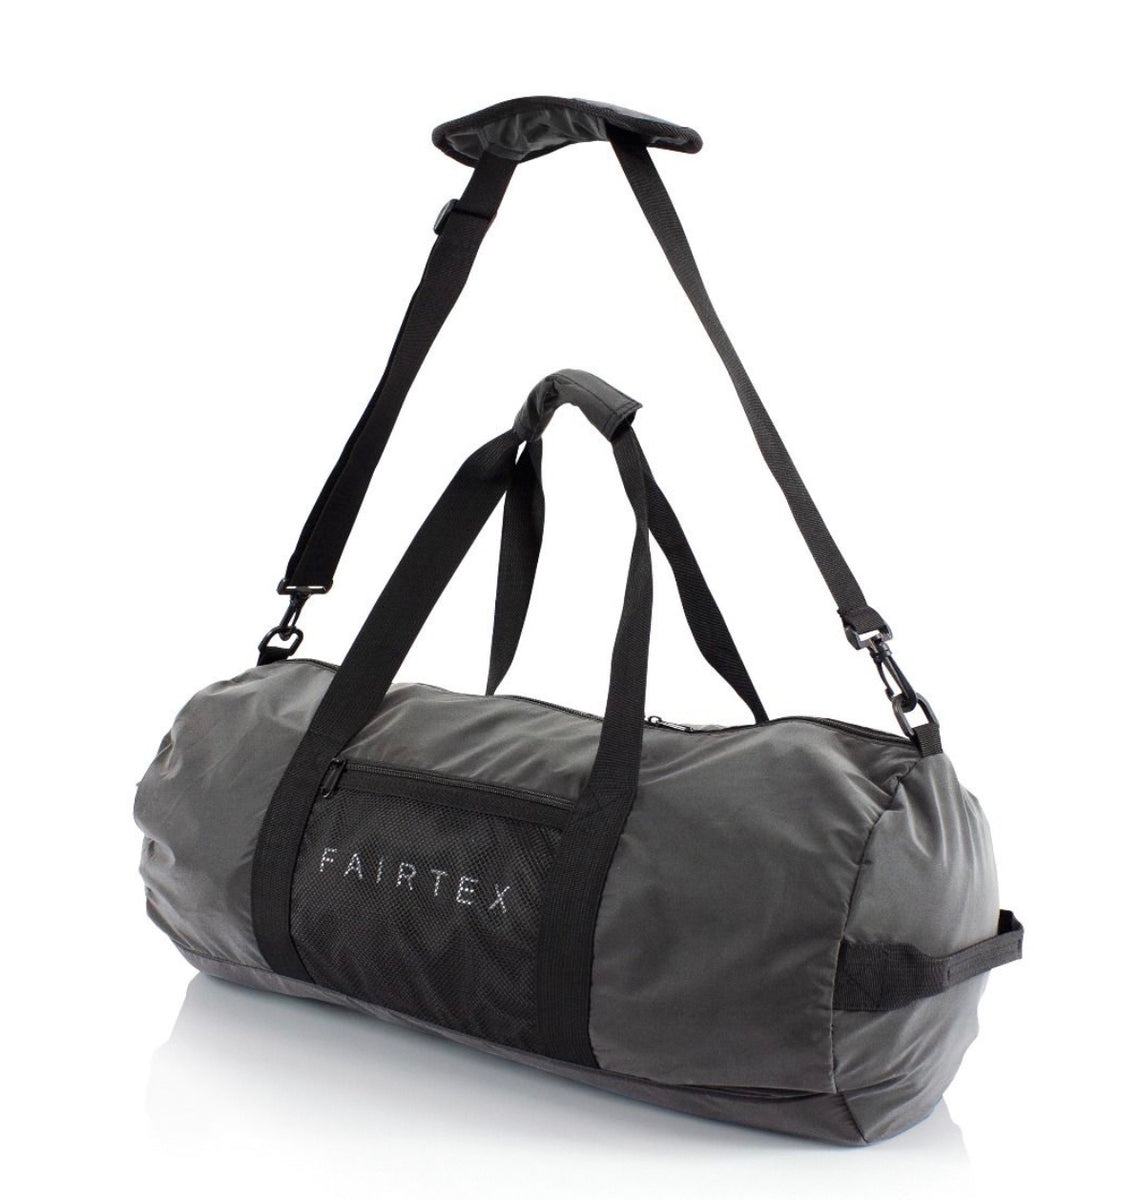 Fairtex Black Duffel Bag - BAG14 - Made in Thailand | MMA Blast – MMA Blast